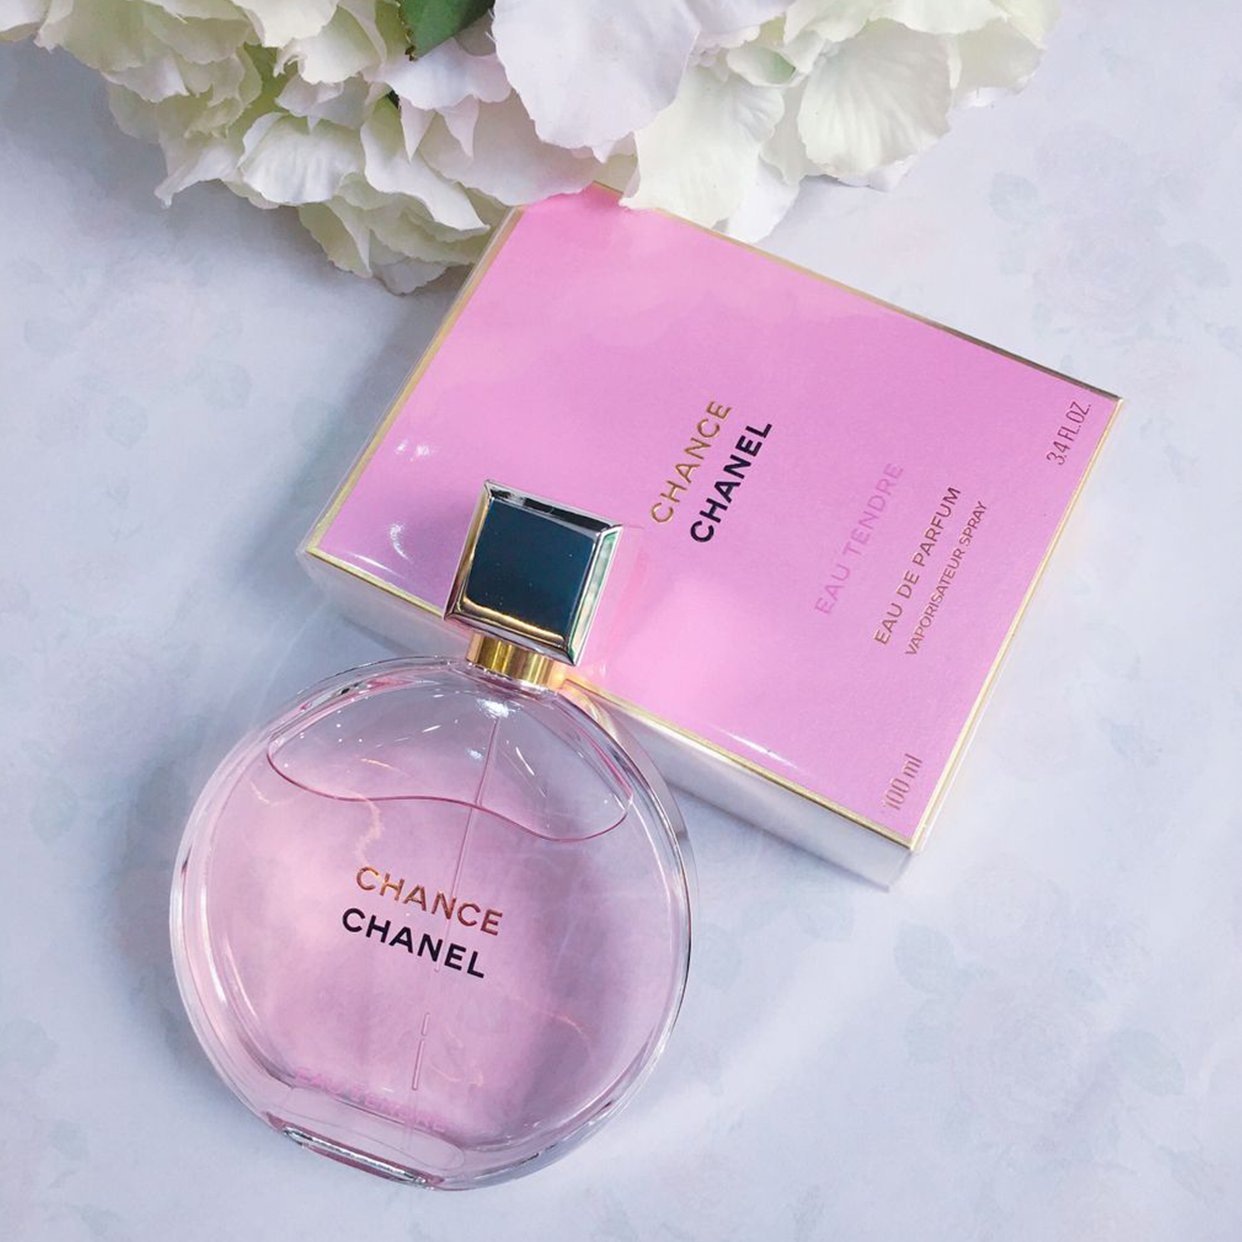 Chanel Chance Eau Tendre EDP - My Perfume Shop Australia